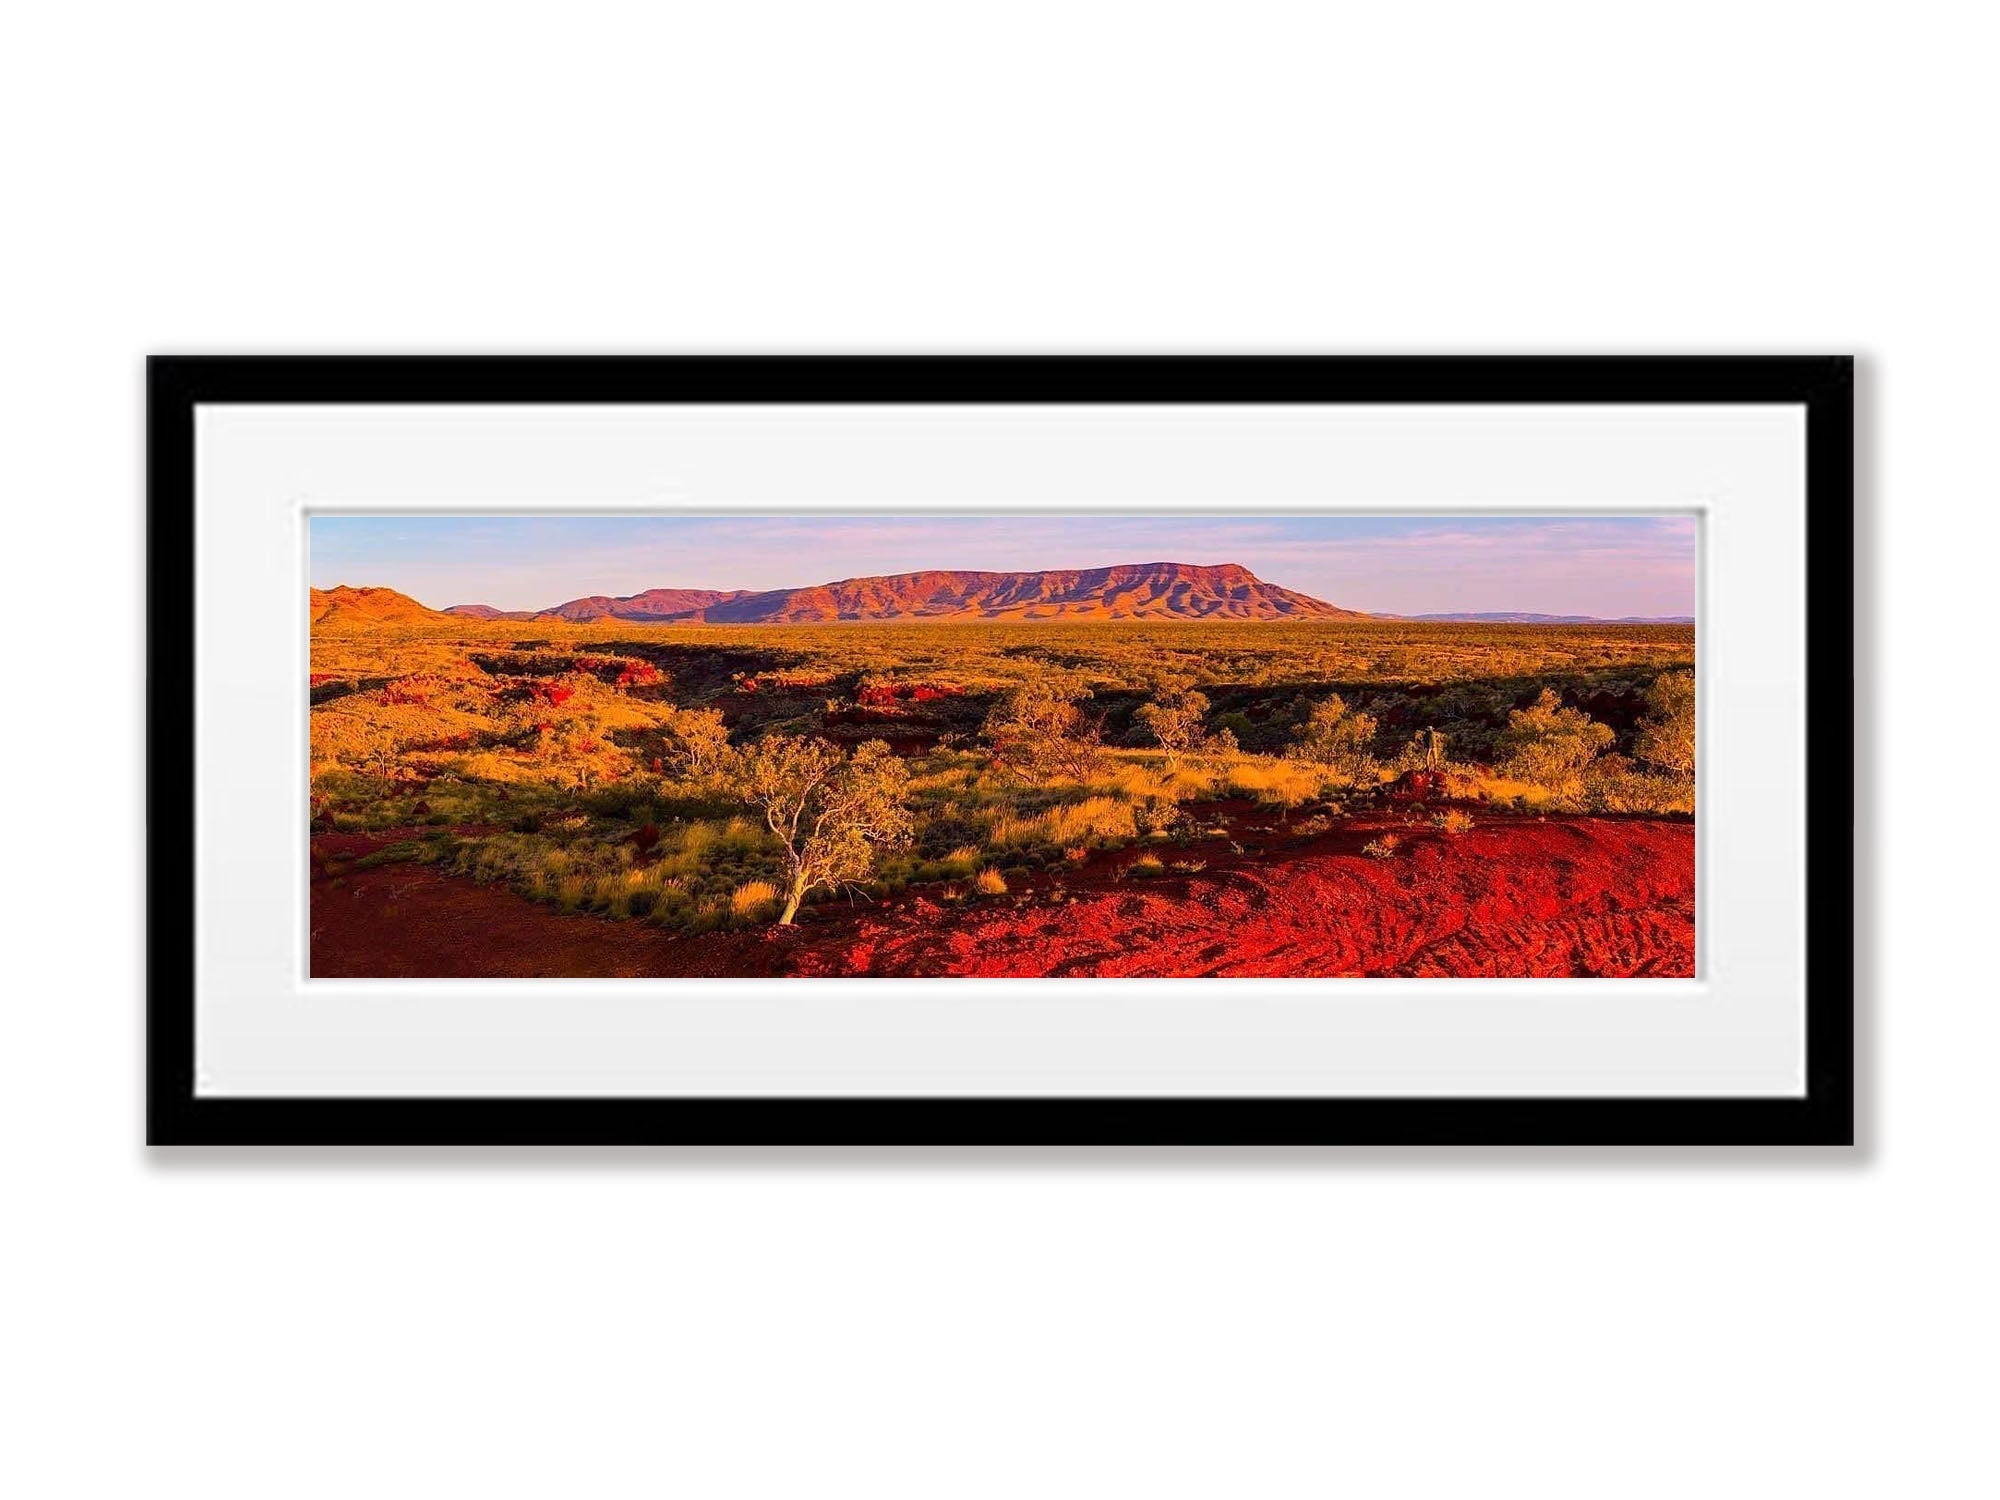 Hammersley Range - Karijini, The Pilbara